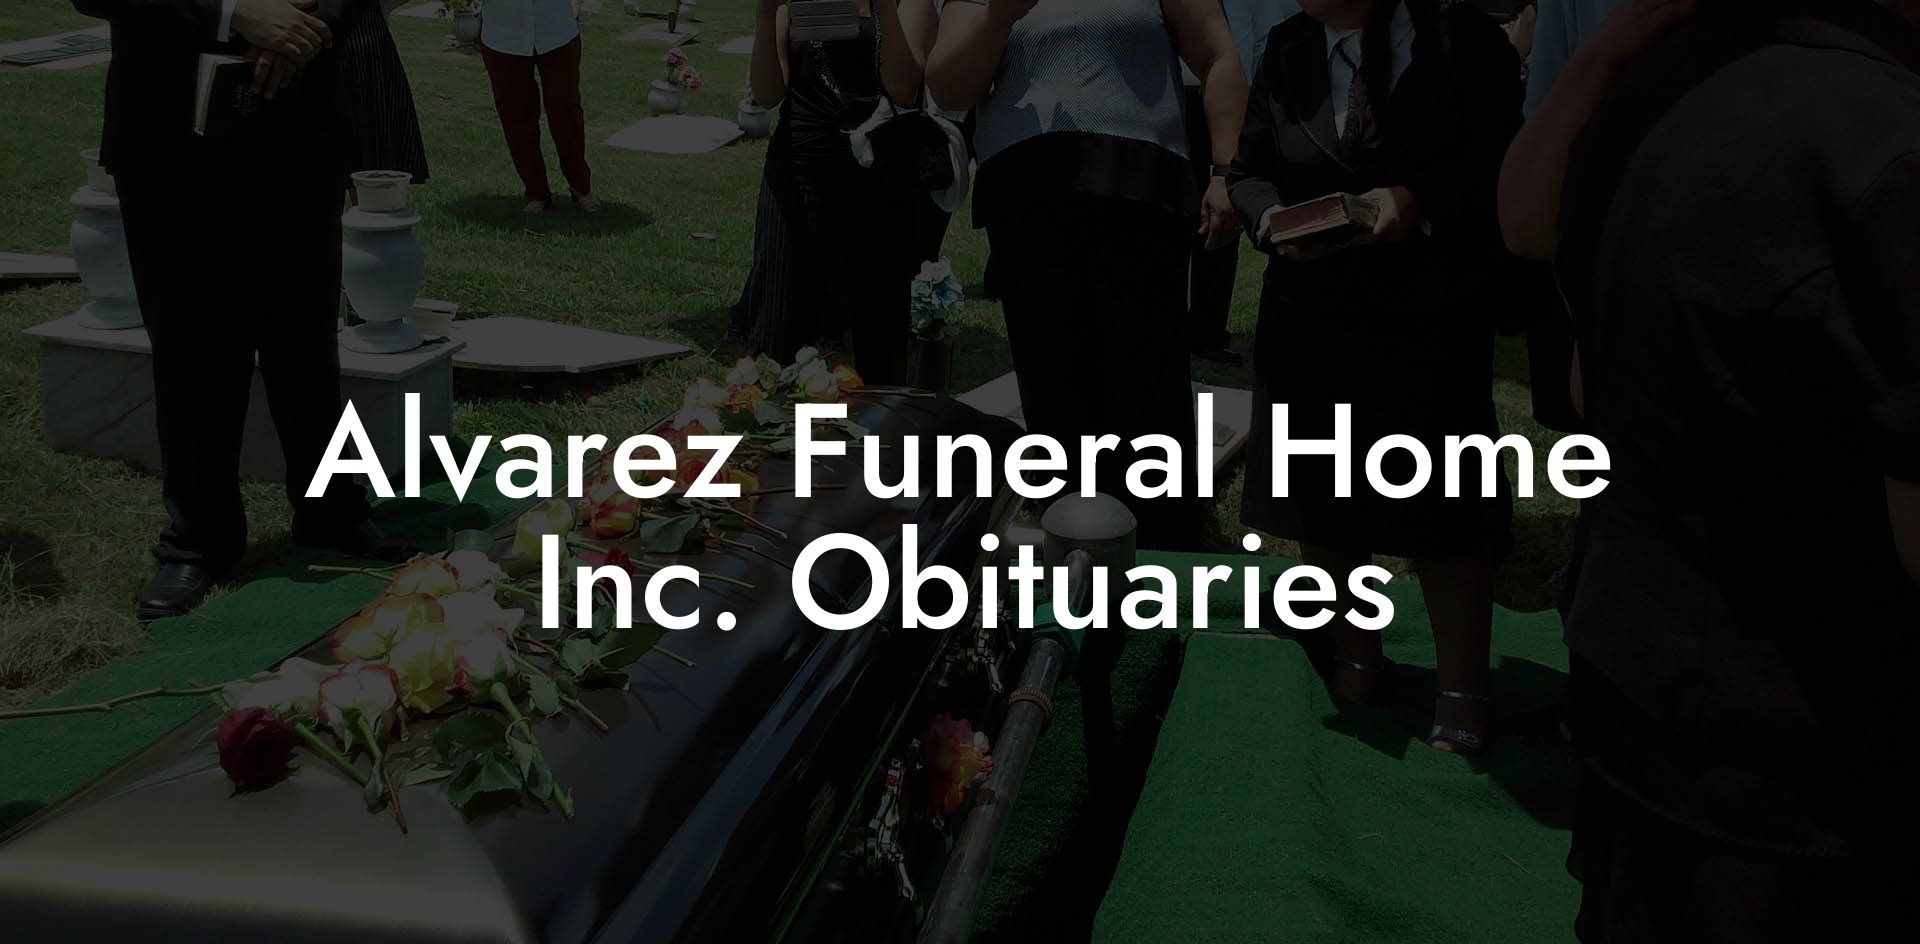 Alvarez Funeral Home, Inc. Obituaries